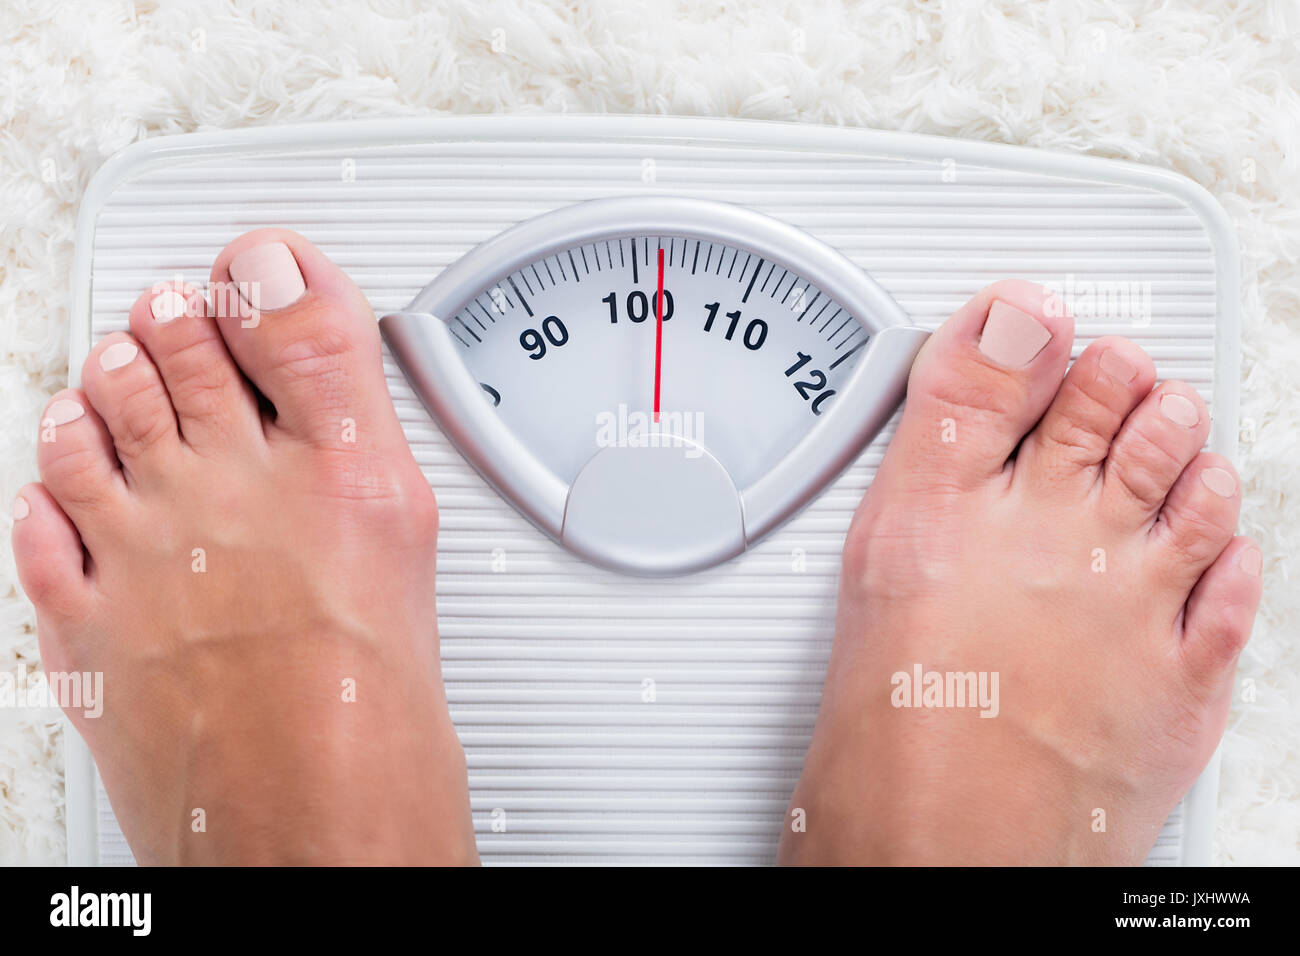 La section basse du surpoids personne obèse Corps de mesure Poids sur l'échelle de pesage Banque D'Images